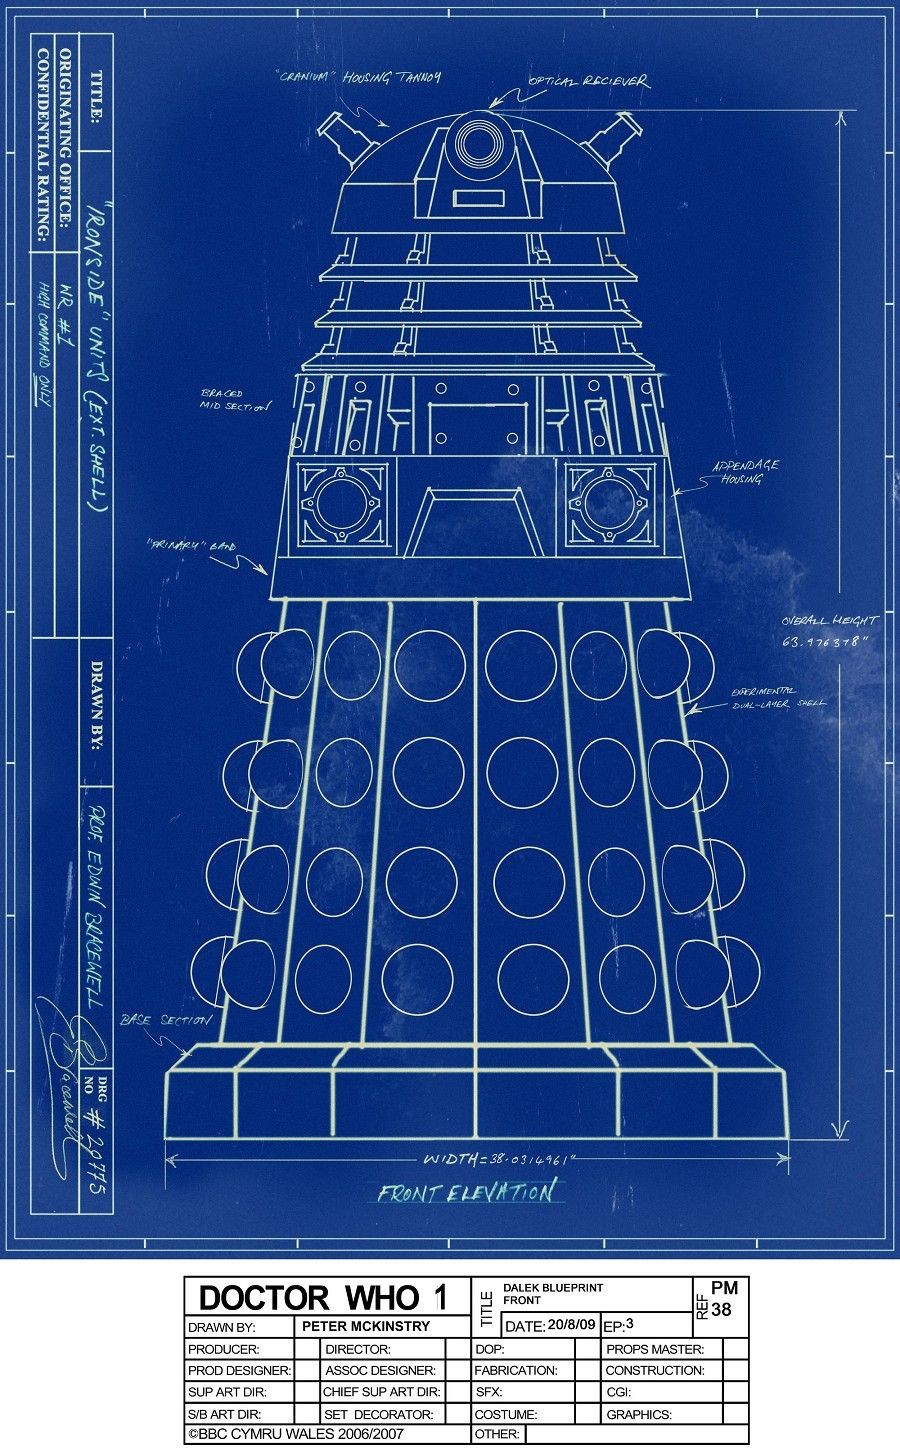 Dalek Papercraft Pm39 Dalek Bp Front 9001 453 Pixels Dr who